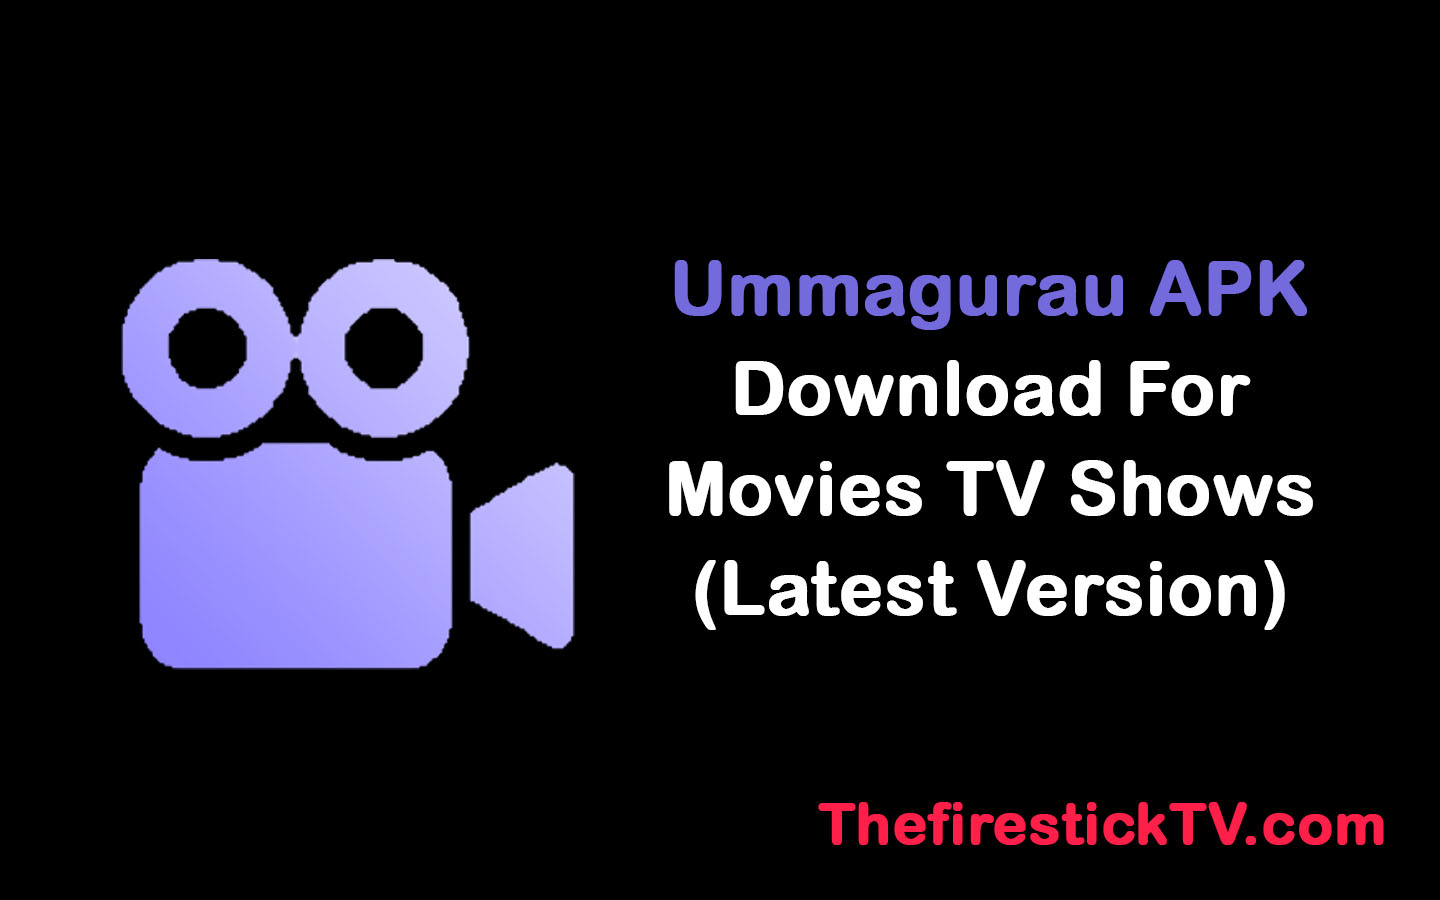 Ummagurau APK Download For Movies TV Shows